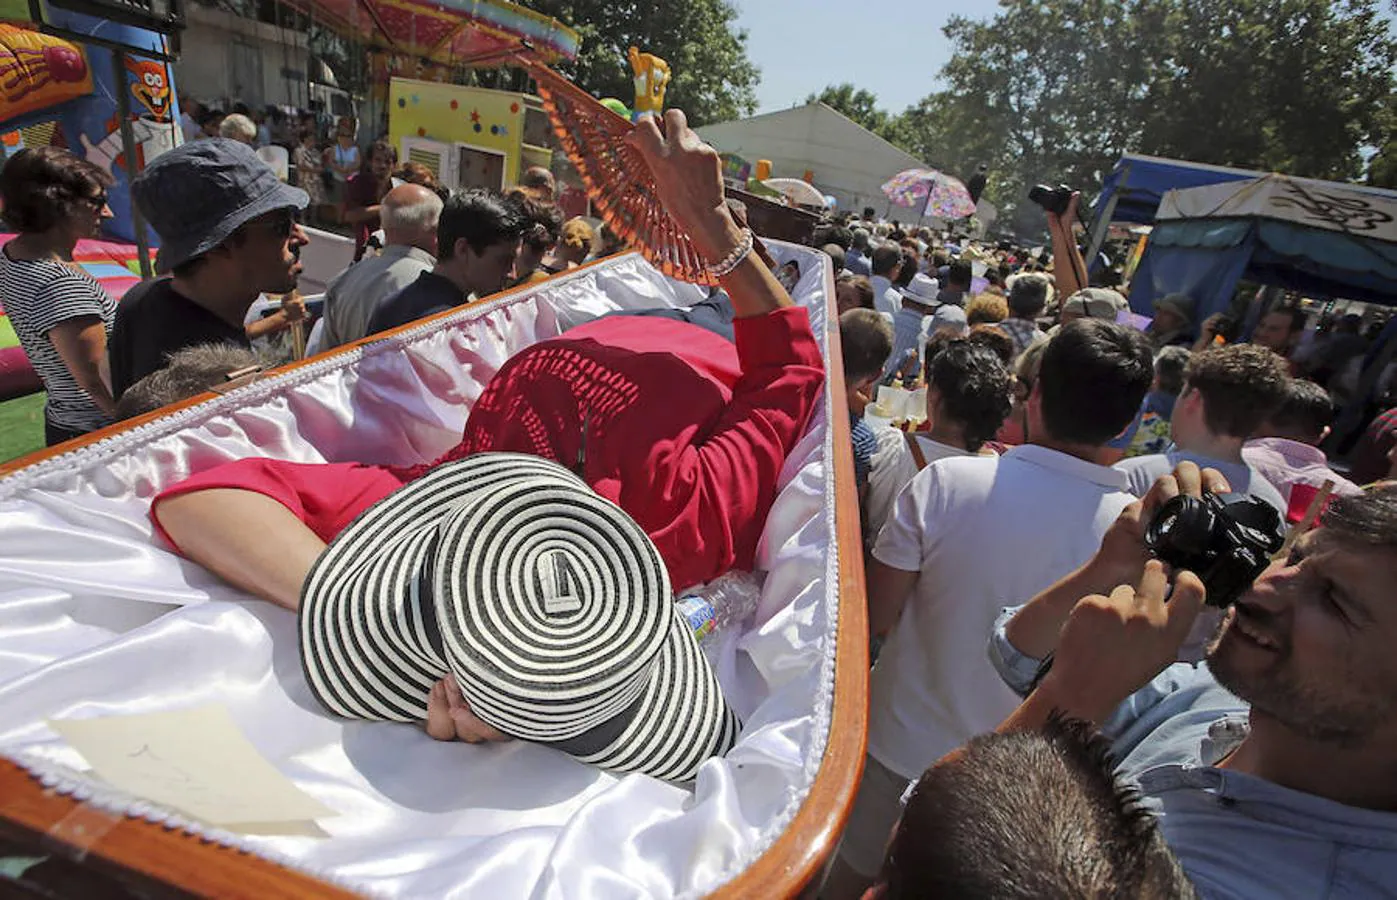 Devotos de Santa Marta que vieron de cerca a la muerte desfilan en procesión dentro de ataúdes 